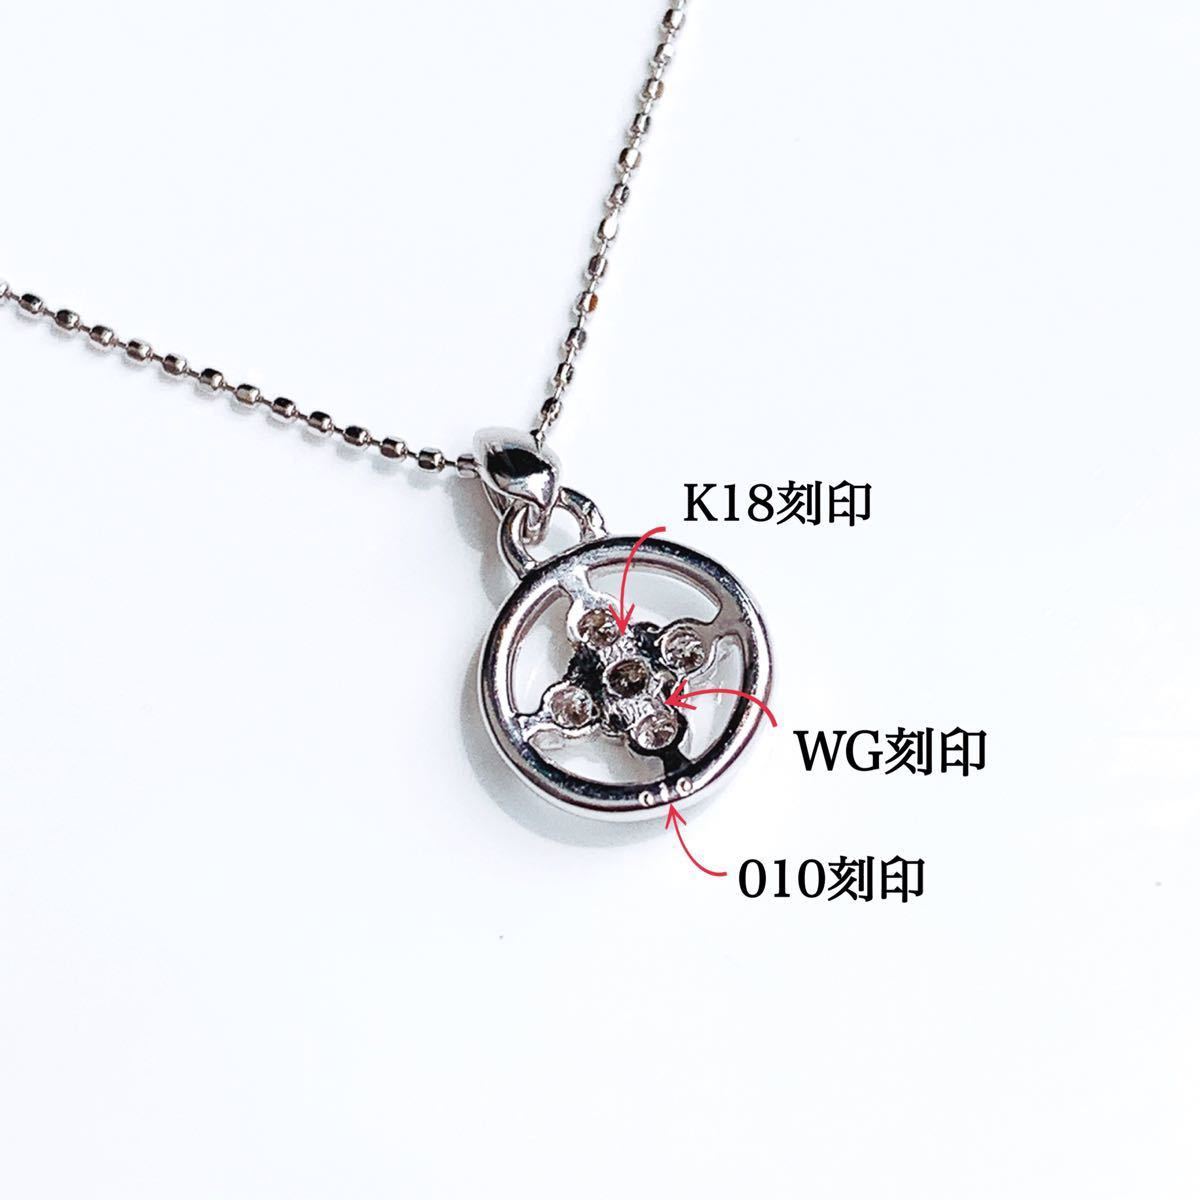 【未使用品】K18WG サークル ダイヤ ネックレス